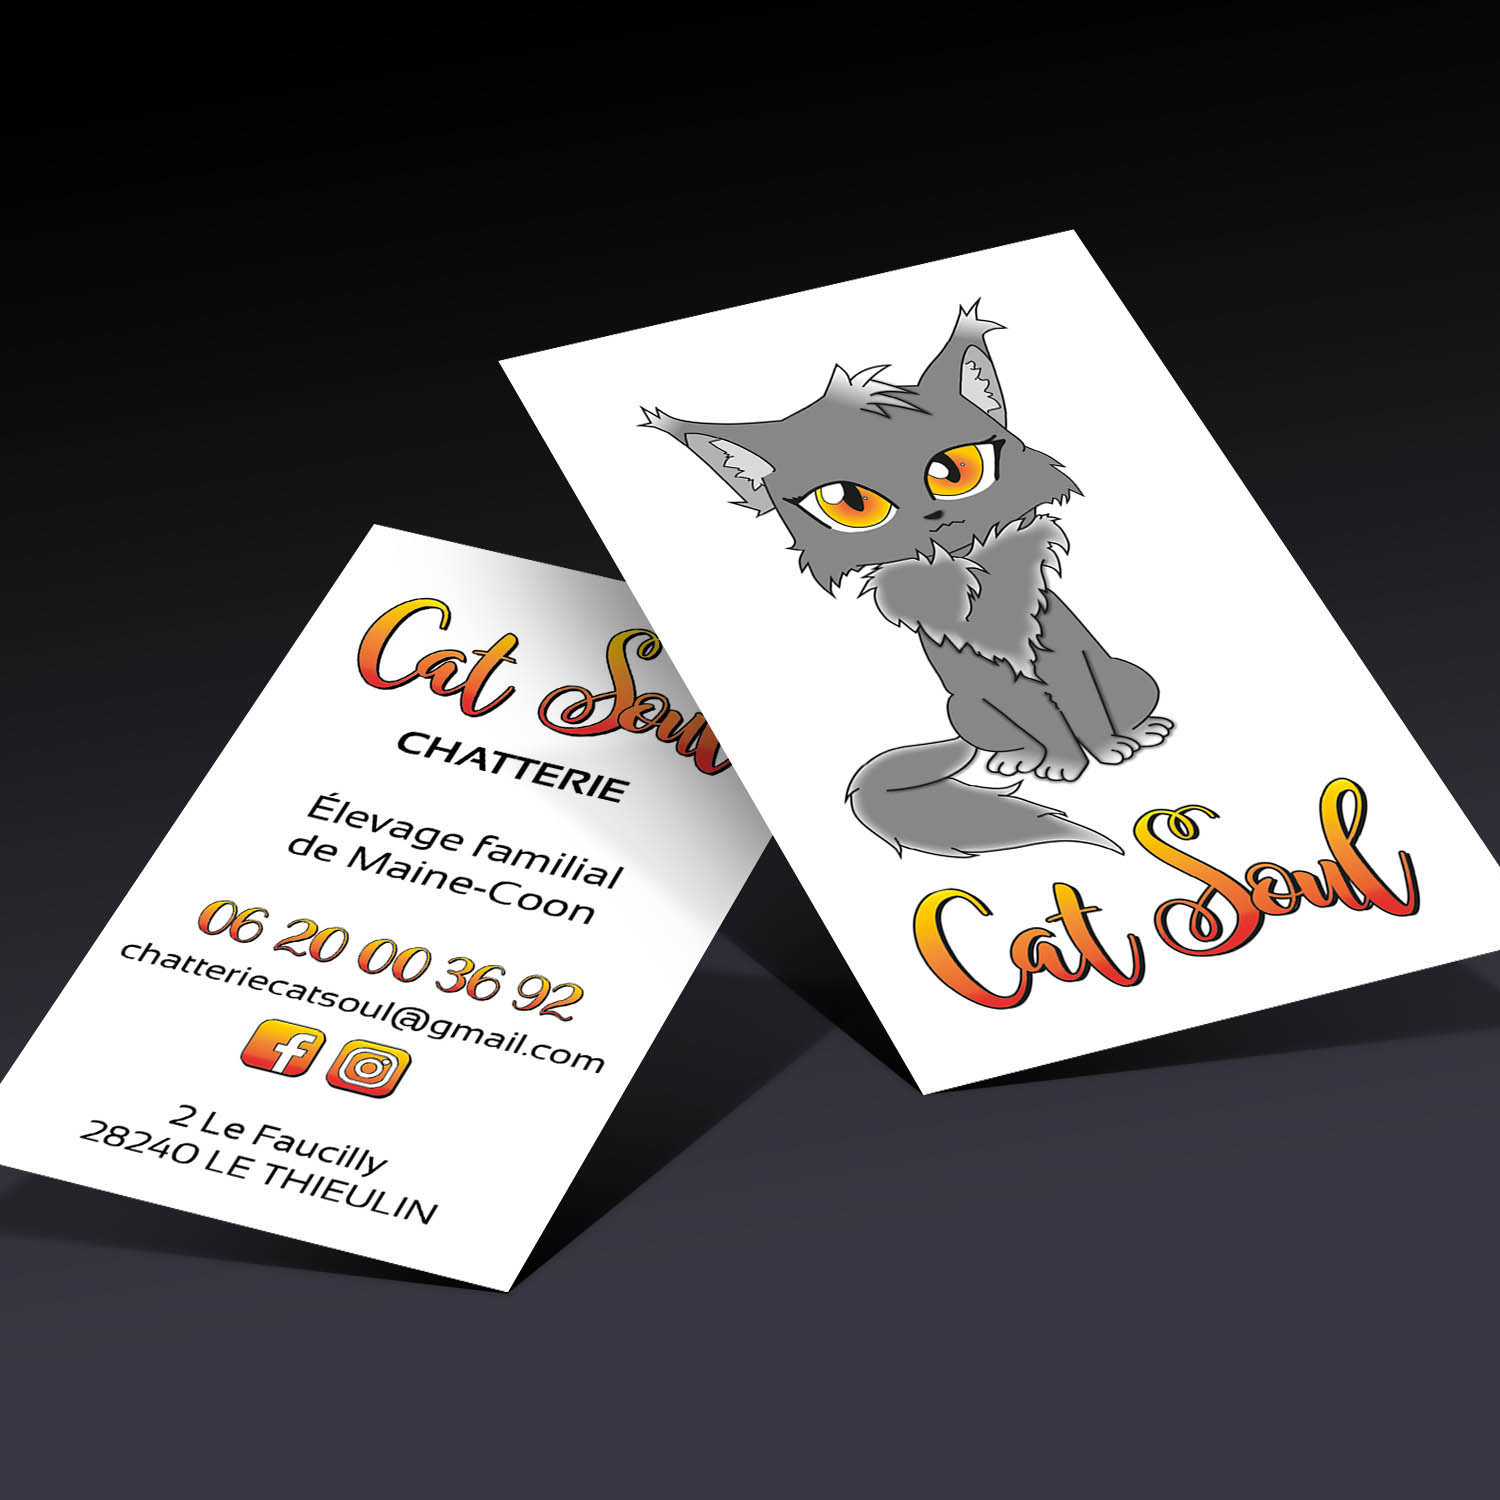 Cartes de visite personnalisées pour la Chatterie Cat Soul